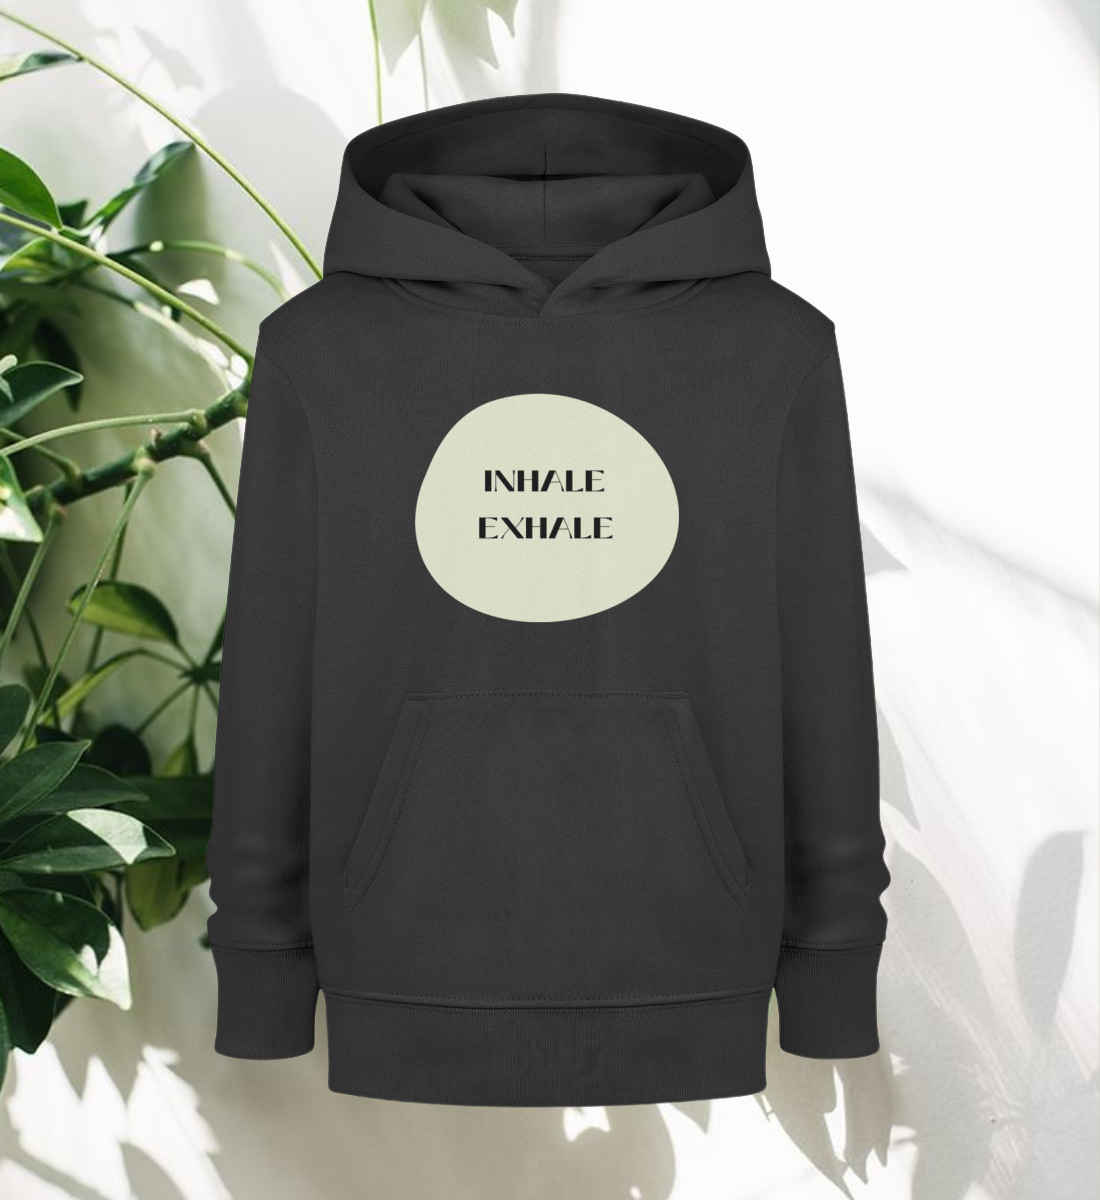 inhale exhale l kinder hoodie bio-baumwolle schwarz l yoga pullover l yoga klamotten l vegane kleidung aus naturtextilien